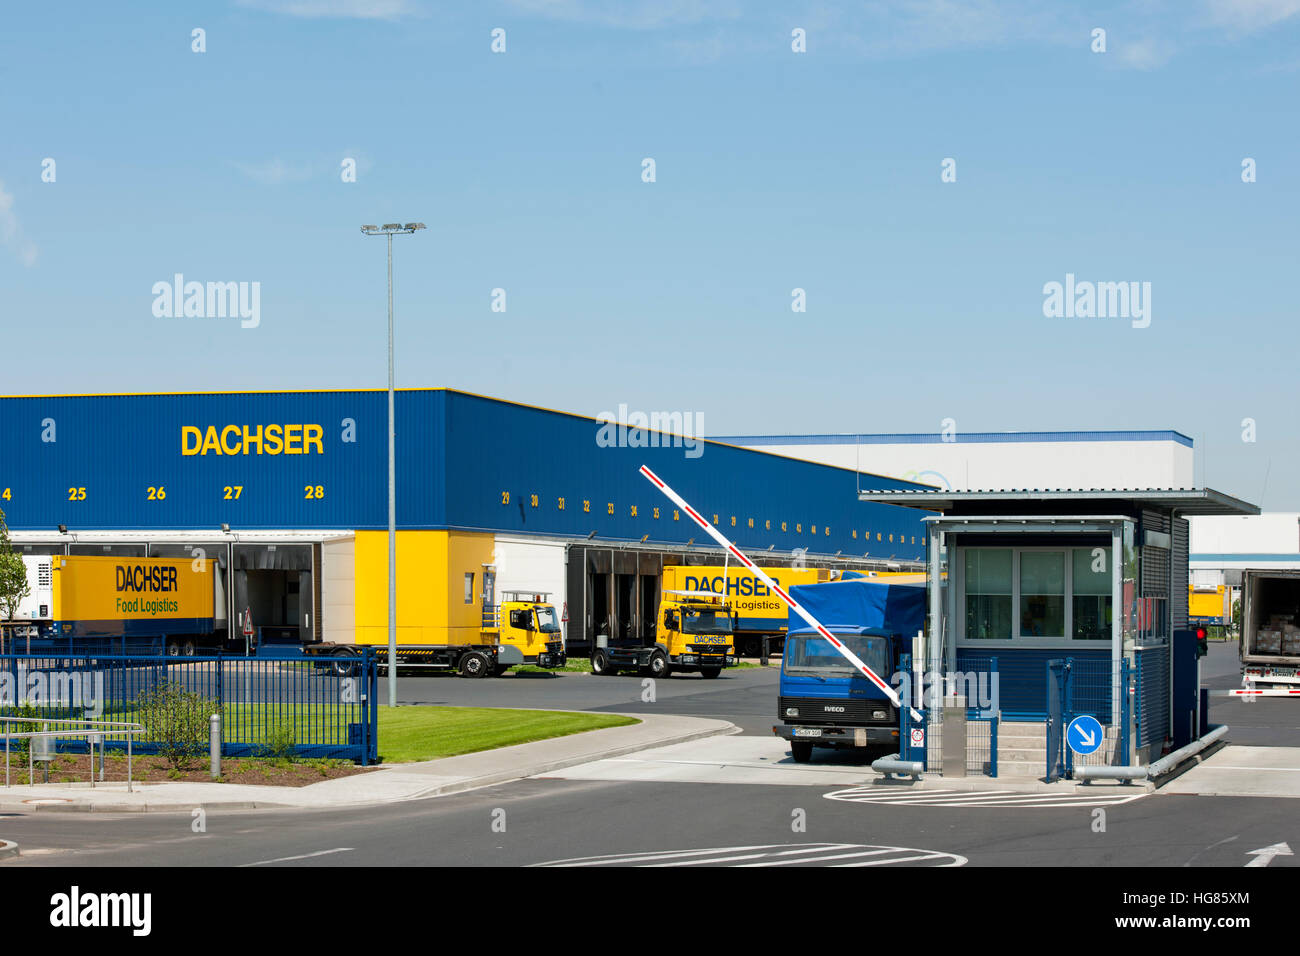 Deutschland, NRW, Aquisgrán, Alsdorf-Schaufenberg Städteregion, Dachser Logistik-Unternehmen Foto de stock